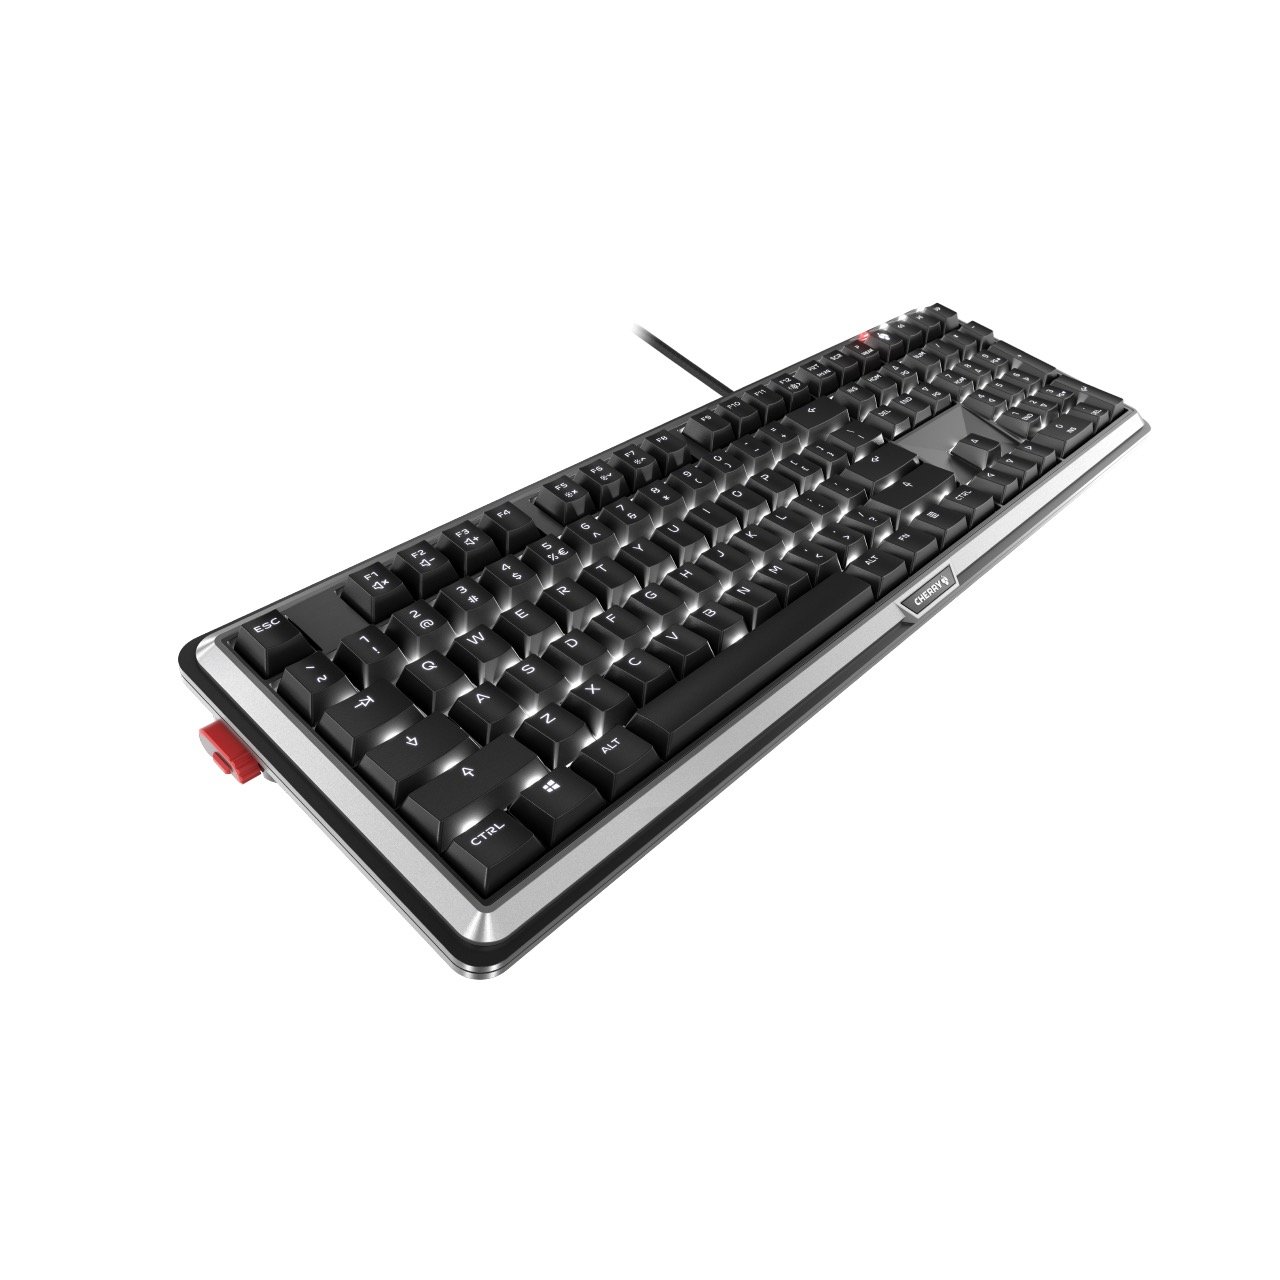 Image 11 : Cherry MX Board 5.0 : clavier mécanique silencieux et ergonomique pour gamers